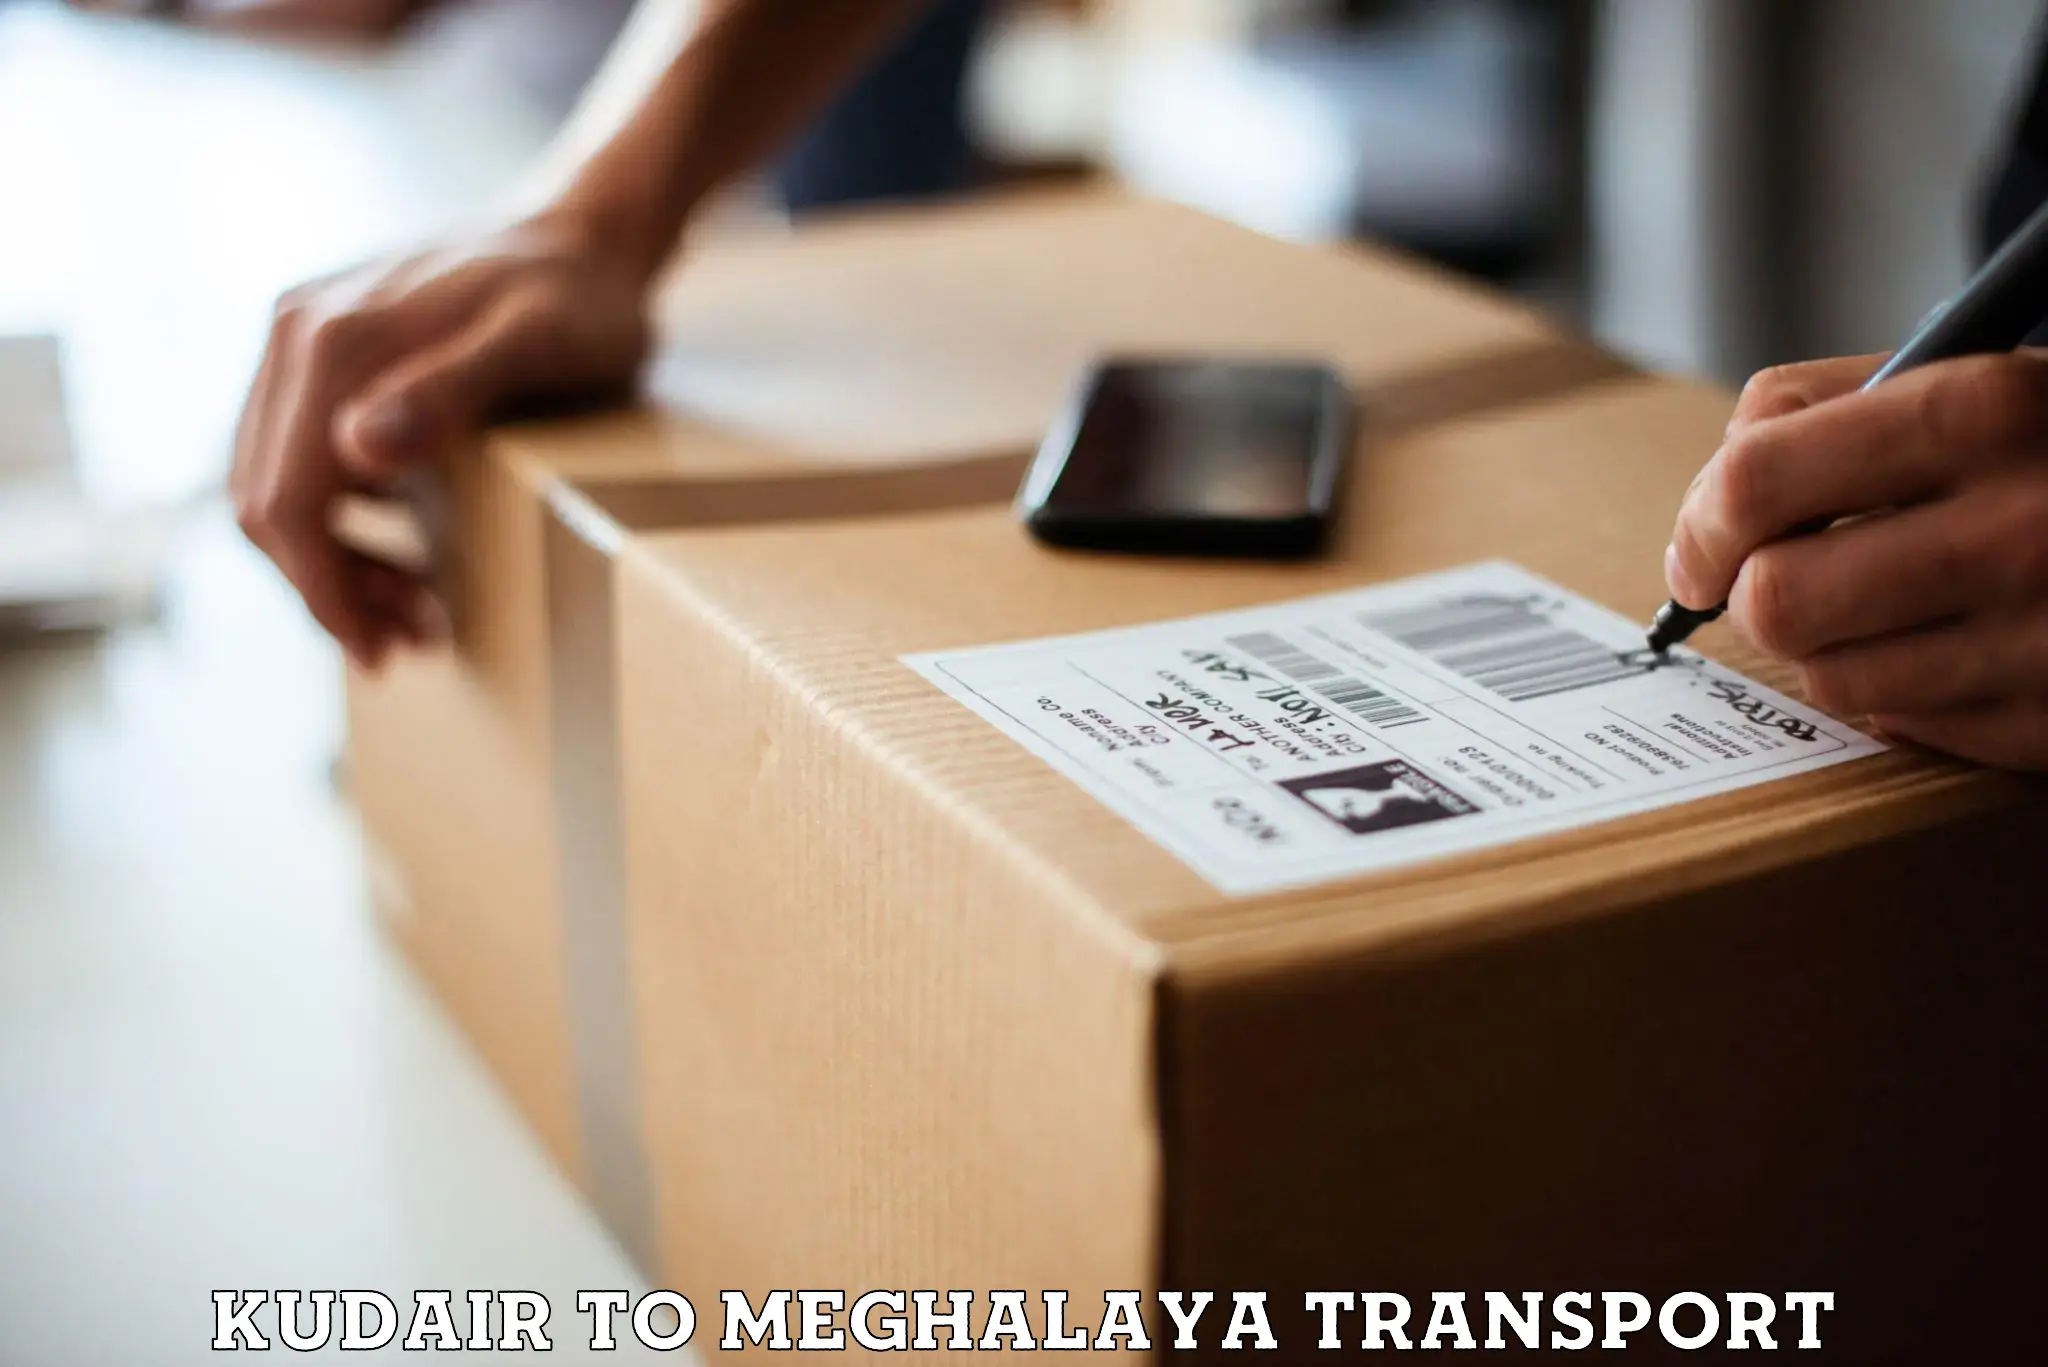 Bike shipping service Kudair to Meghalaya